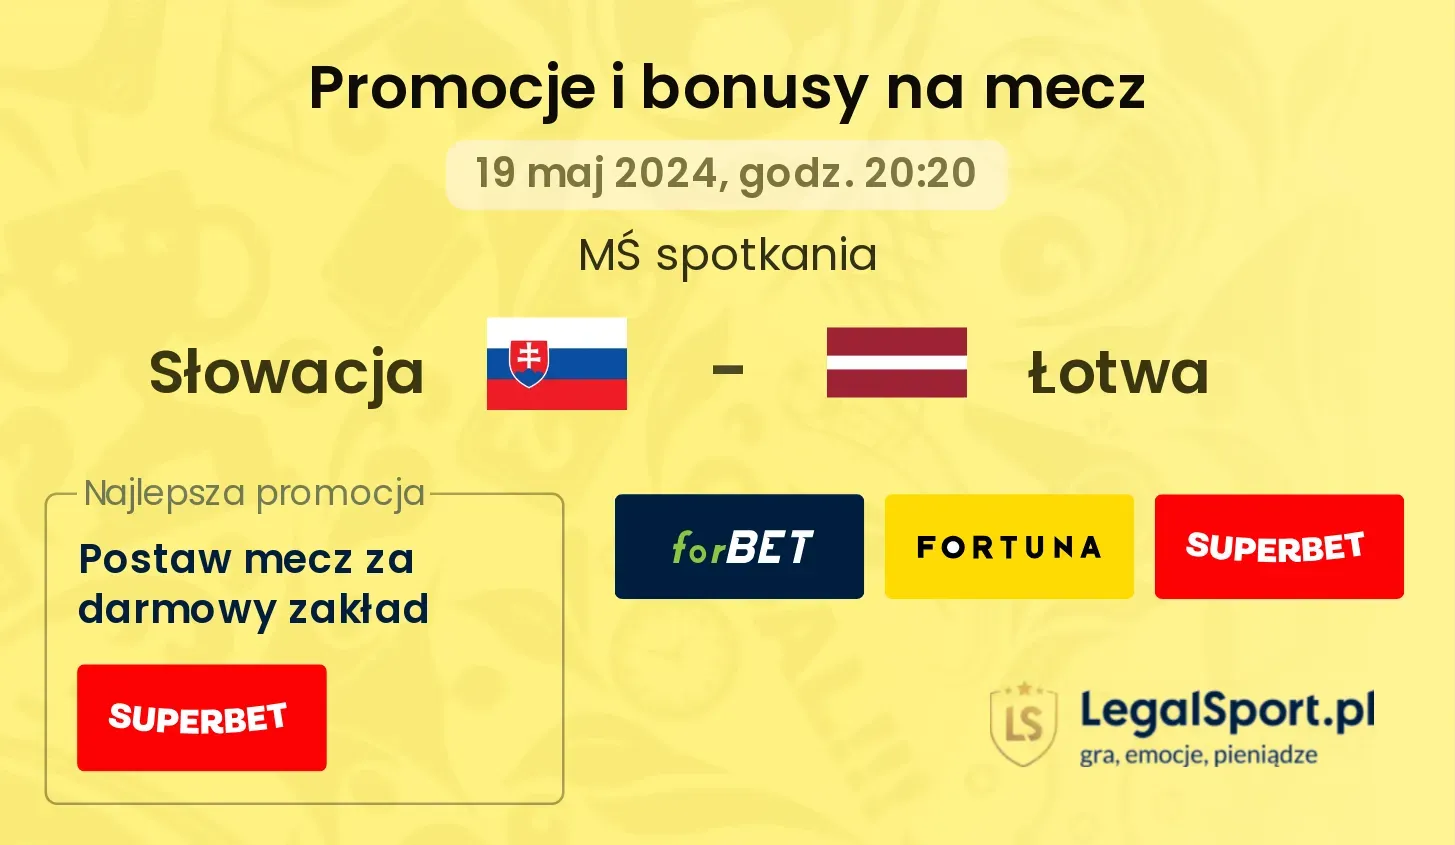 Słowacja - Łotwa bonusy i promocje (19.05, 20:20)